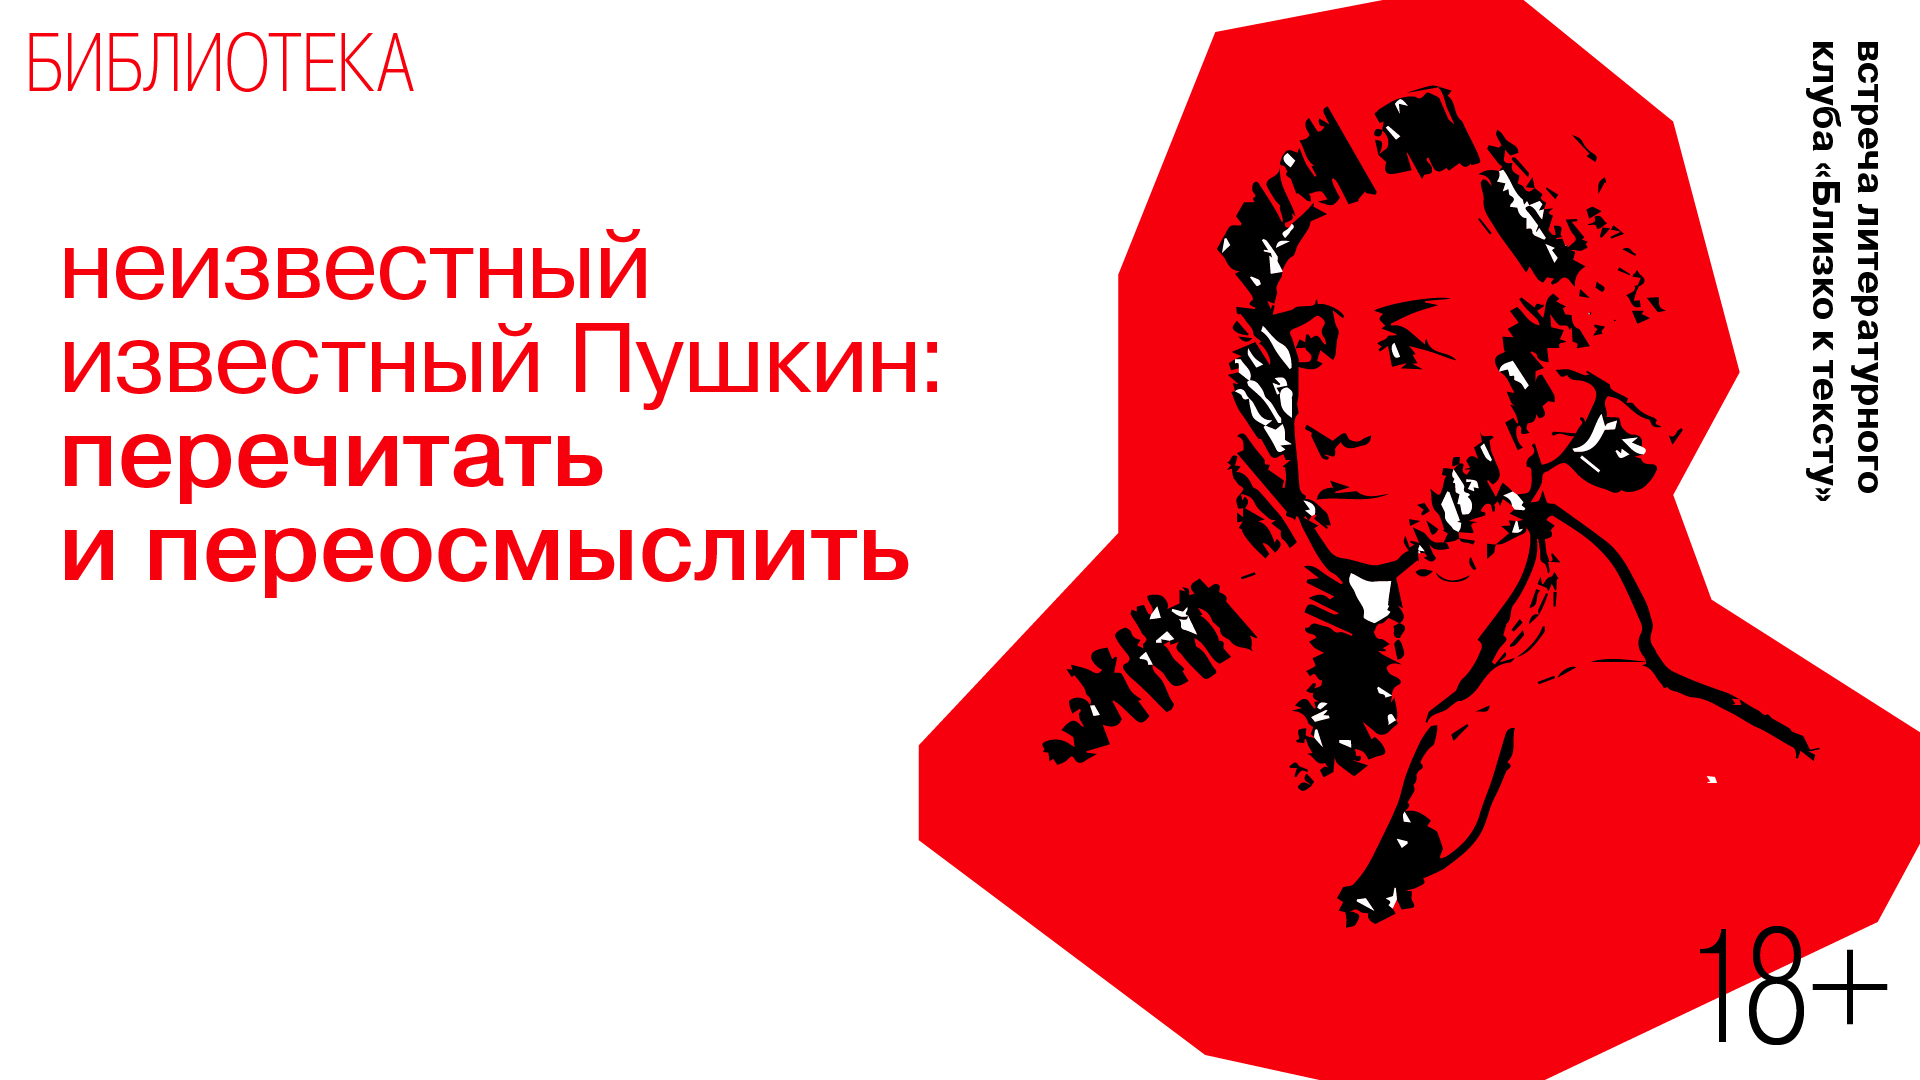 Встреча литературного клуба «Близко к тексту»<br>Неизвестный известный Пушкин: перечитать и переосмыслить